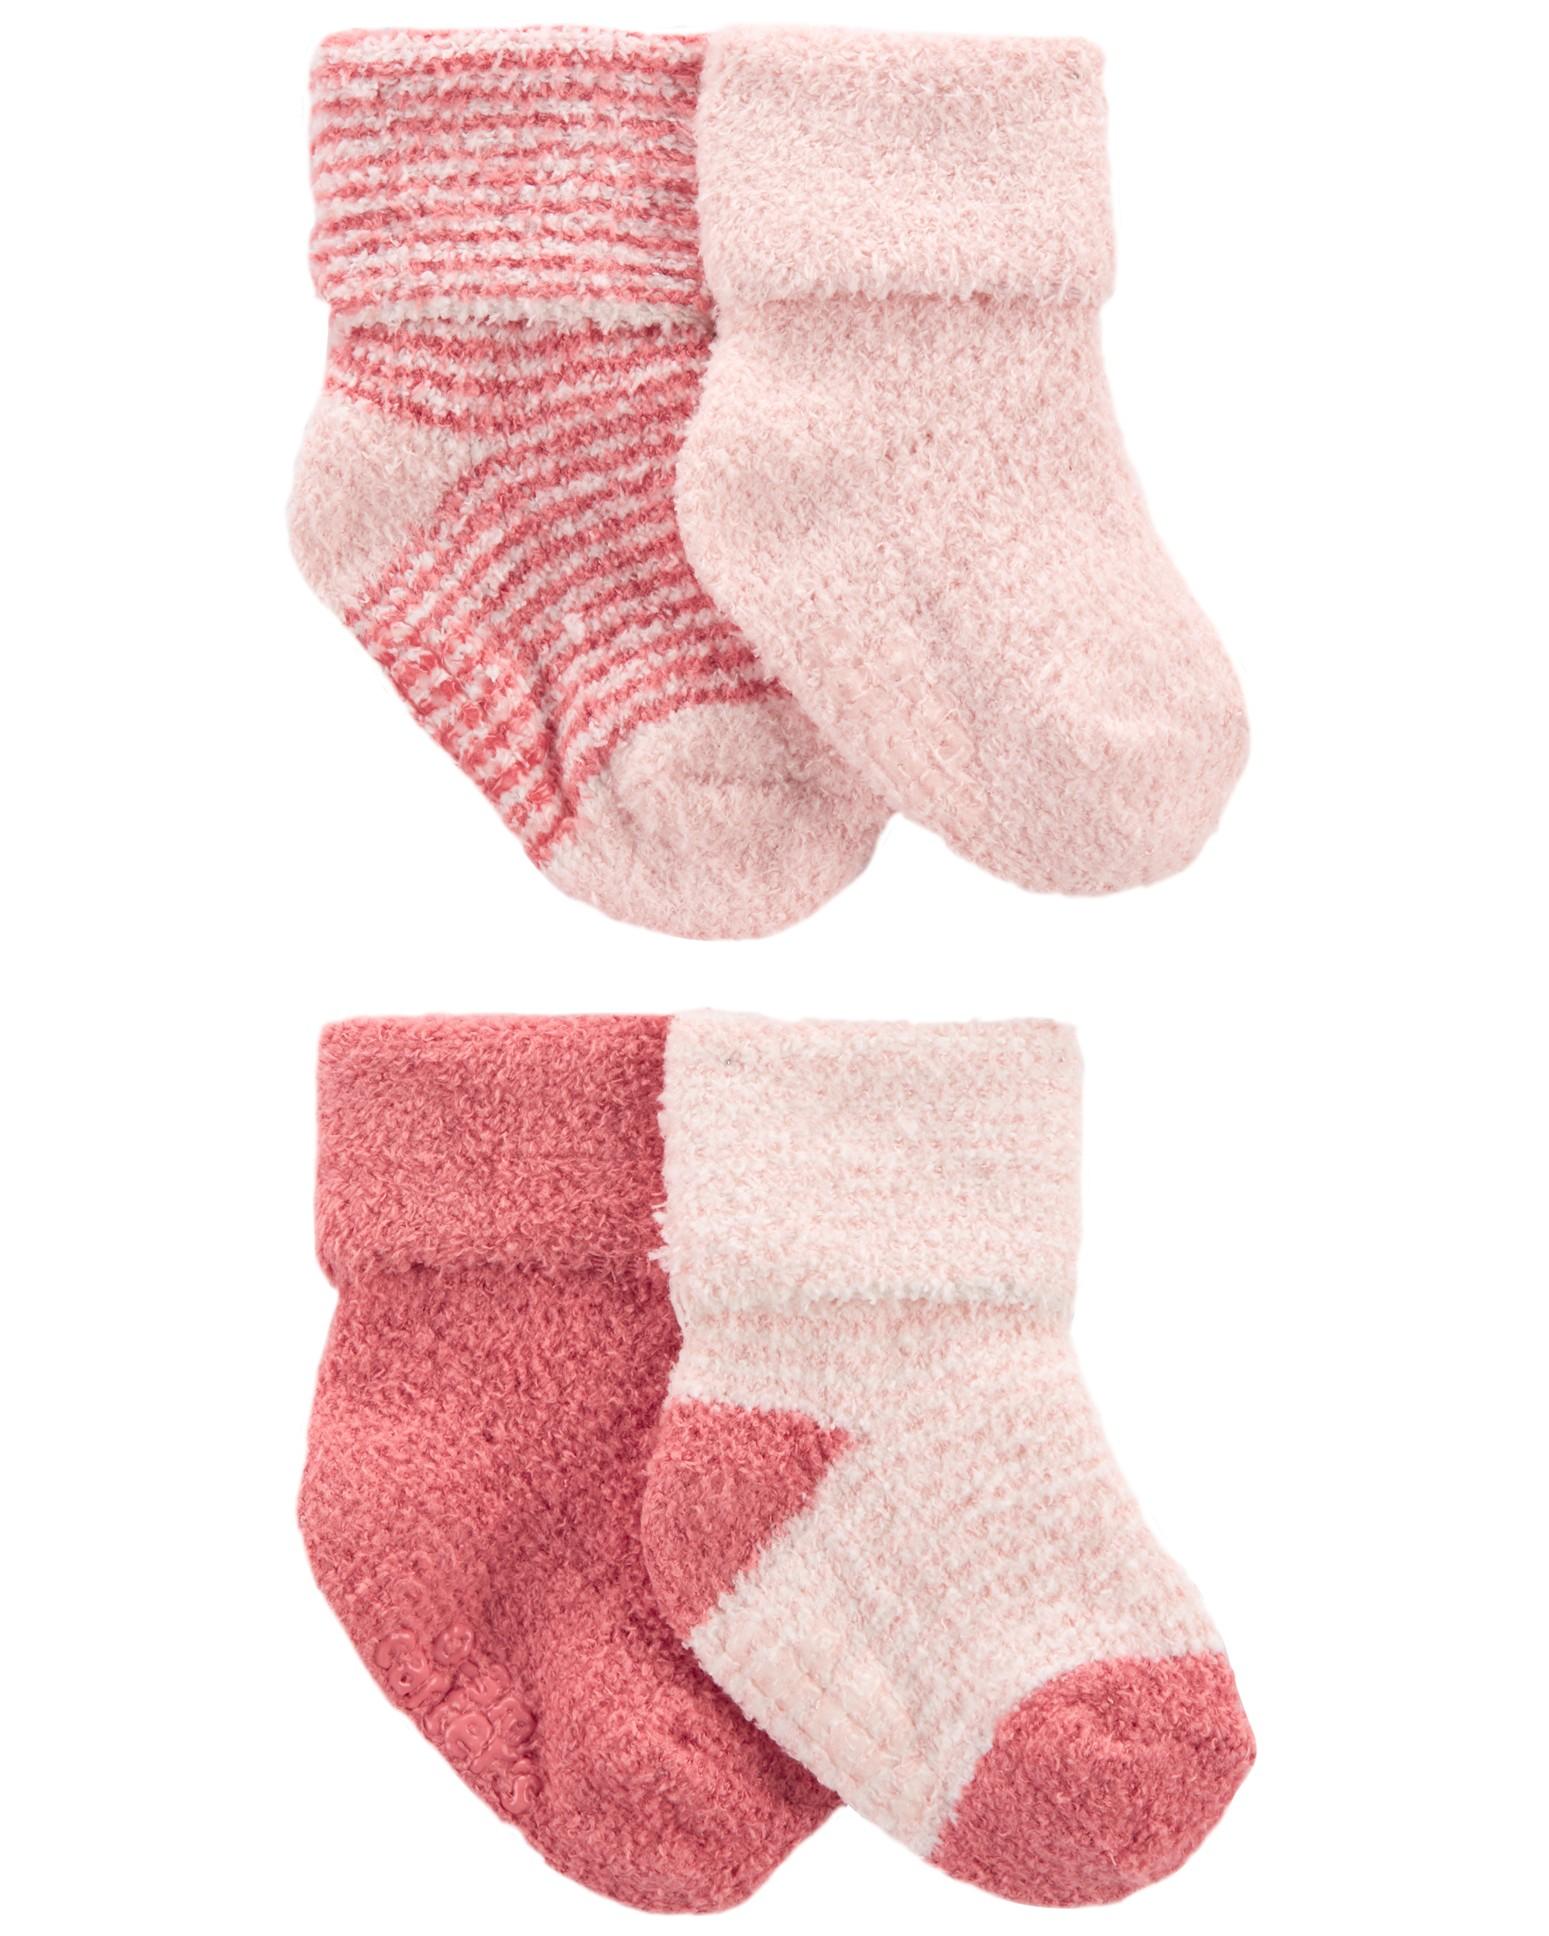 CARTERS CARTER'S Ponožky Stripes Pink dívka LBB 4ks NB/ vel. 56